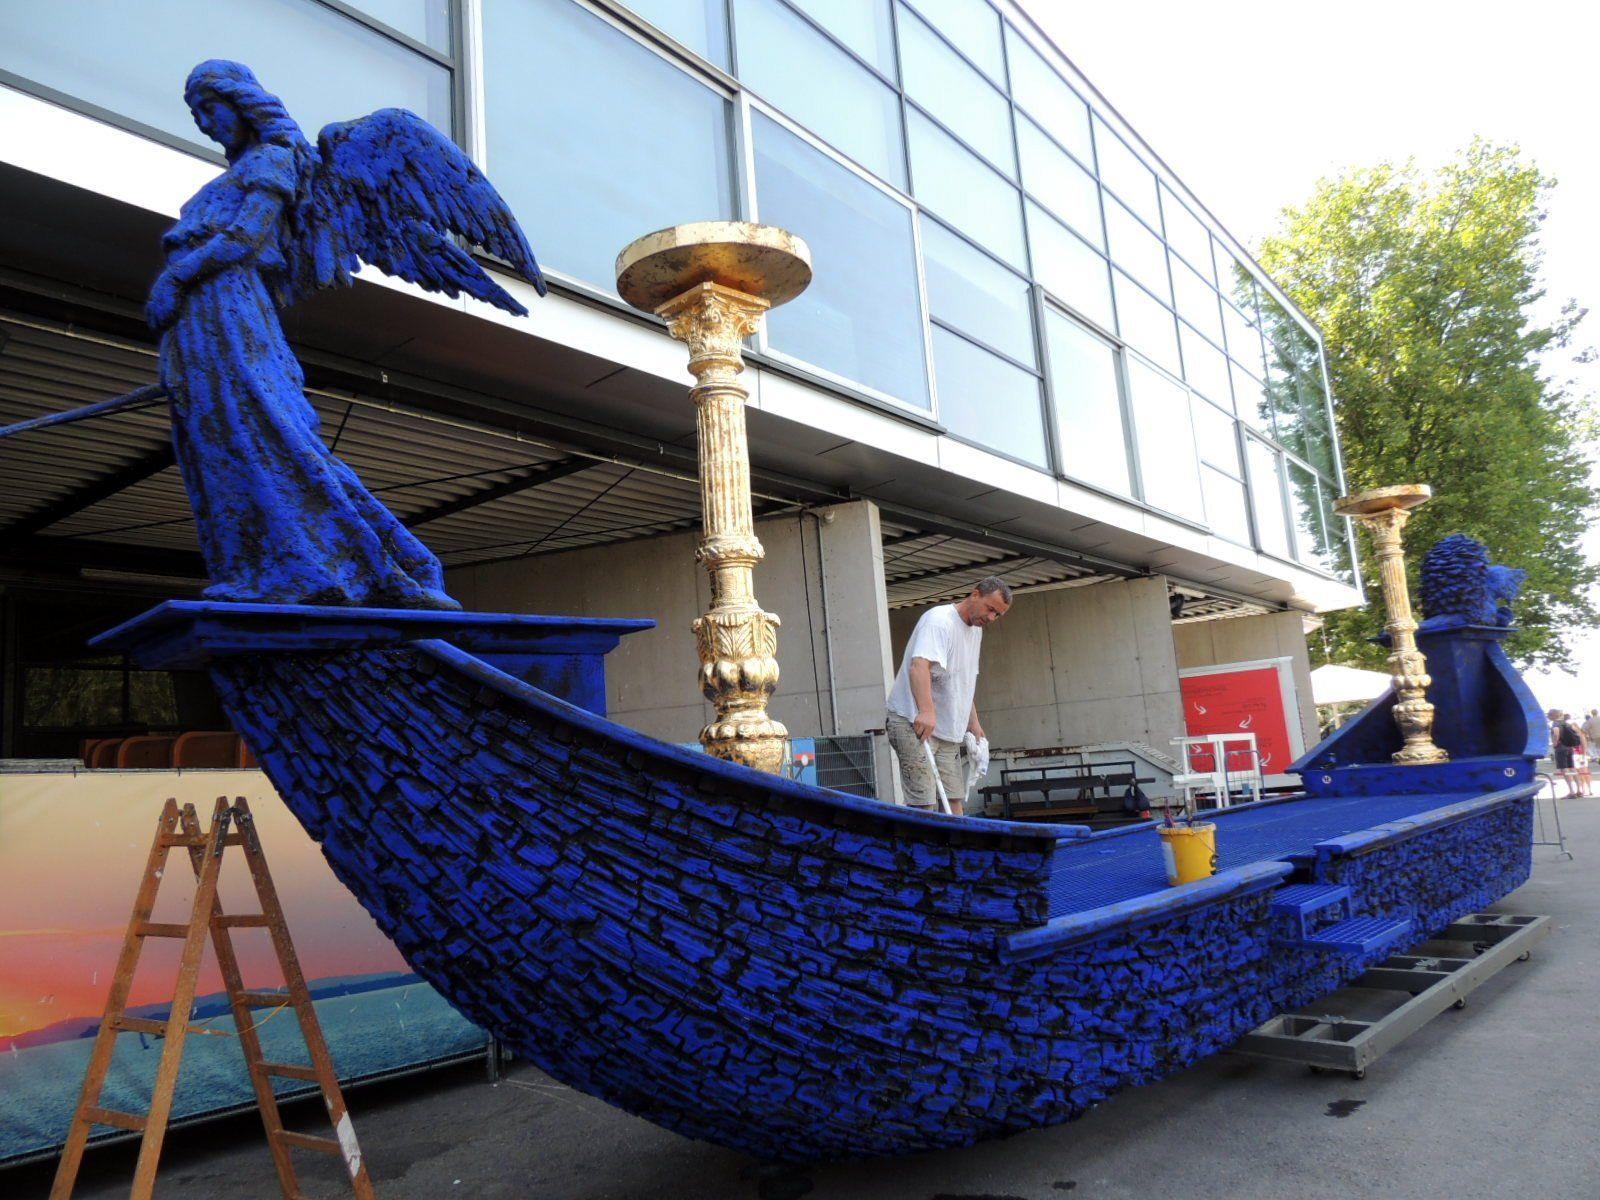 Das Boot der Königin der Nacht erhielt eine auffallende Blaufärbung